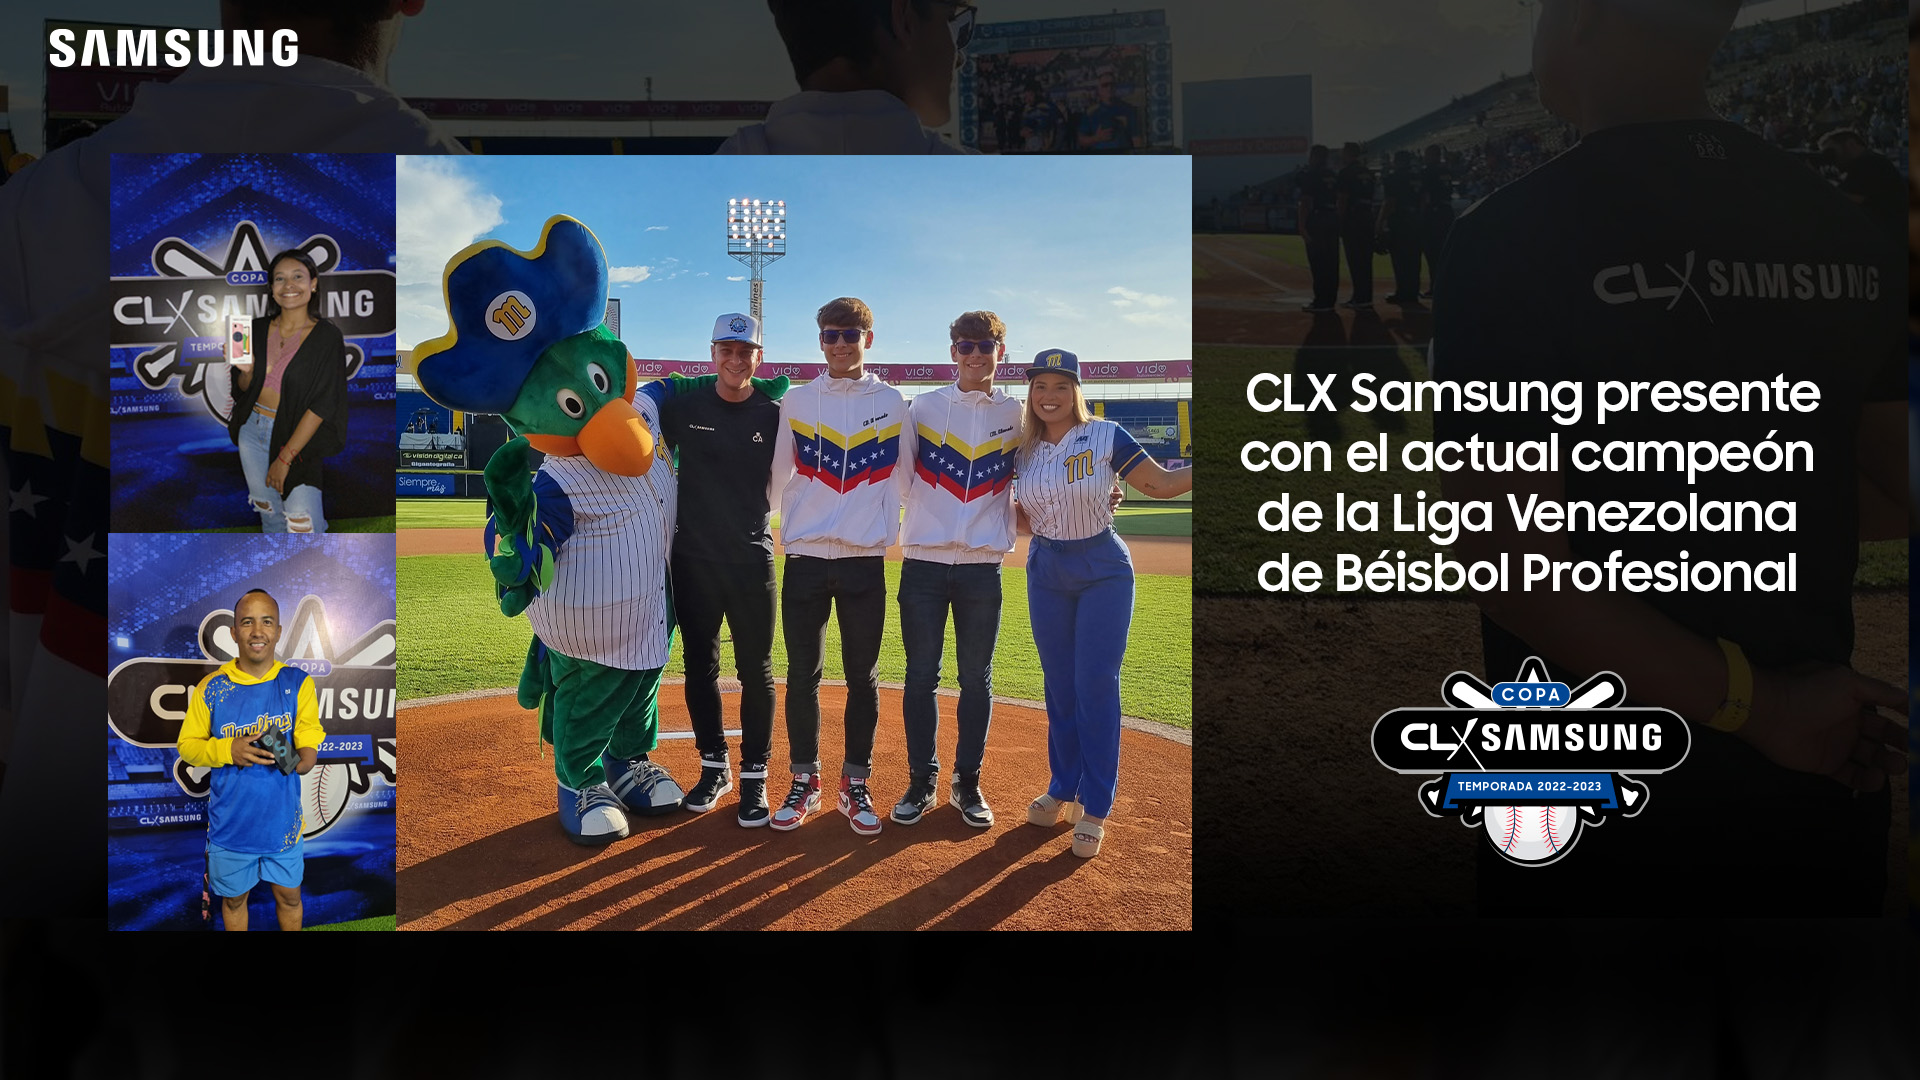 CLX Samsung presente con el actual campeón de la Liga Venezolana de Béisbol Profesional